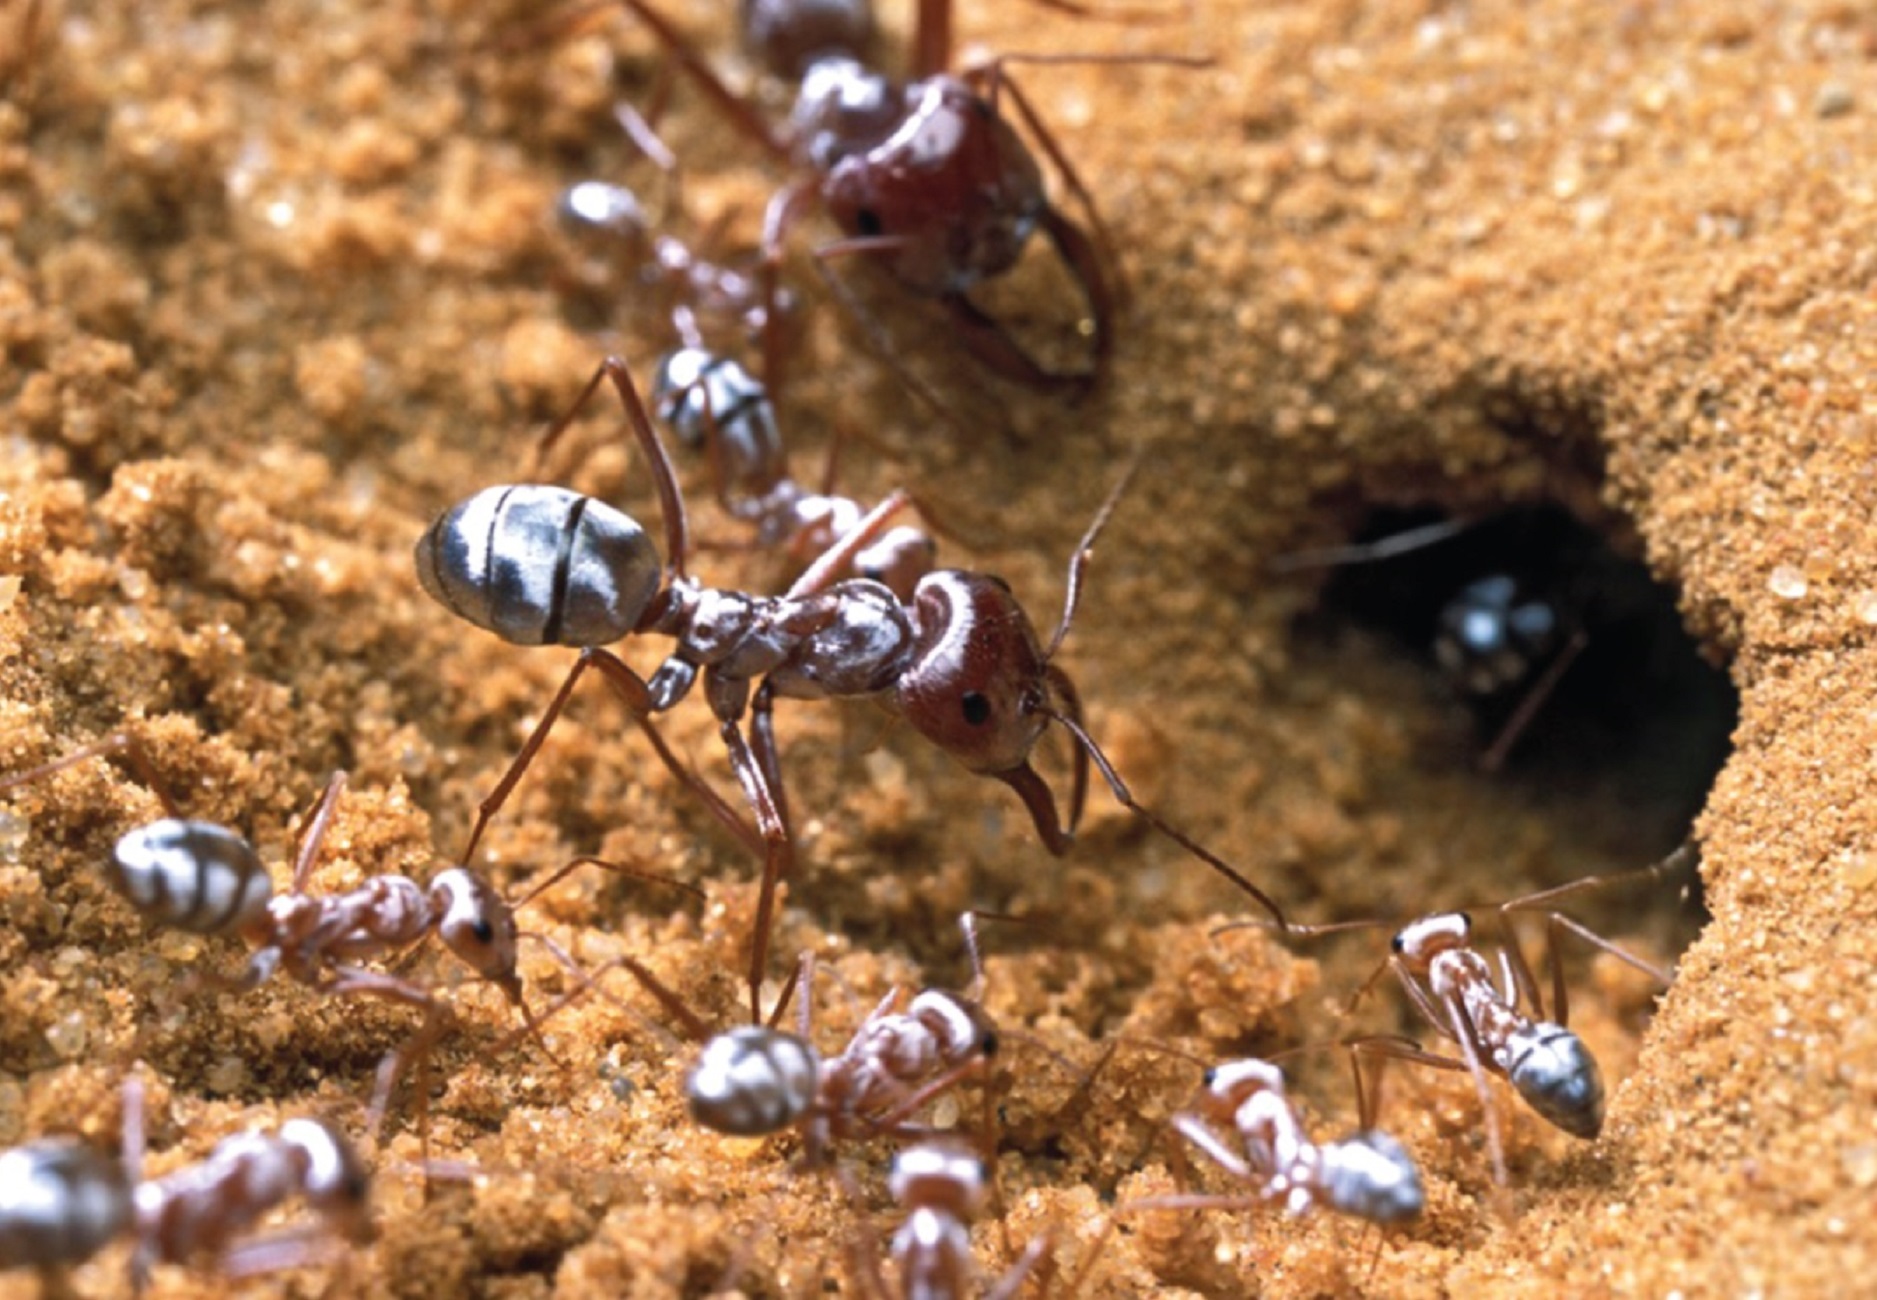 La fourmi argentée du Sahara possède des poils aux propriétés optiques étonnantes. Pour mieux les étudier, les chercheurs les ont rasées avec un scalpel bien aiguisé… © P. Landmann